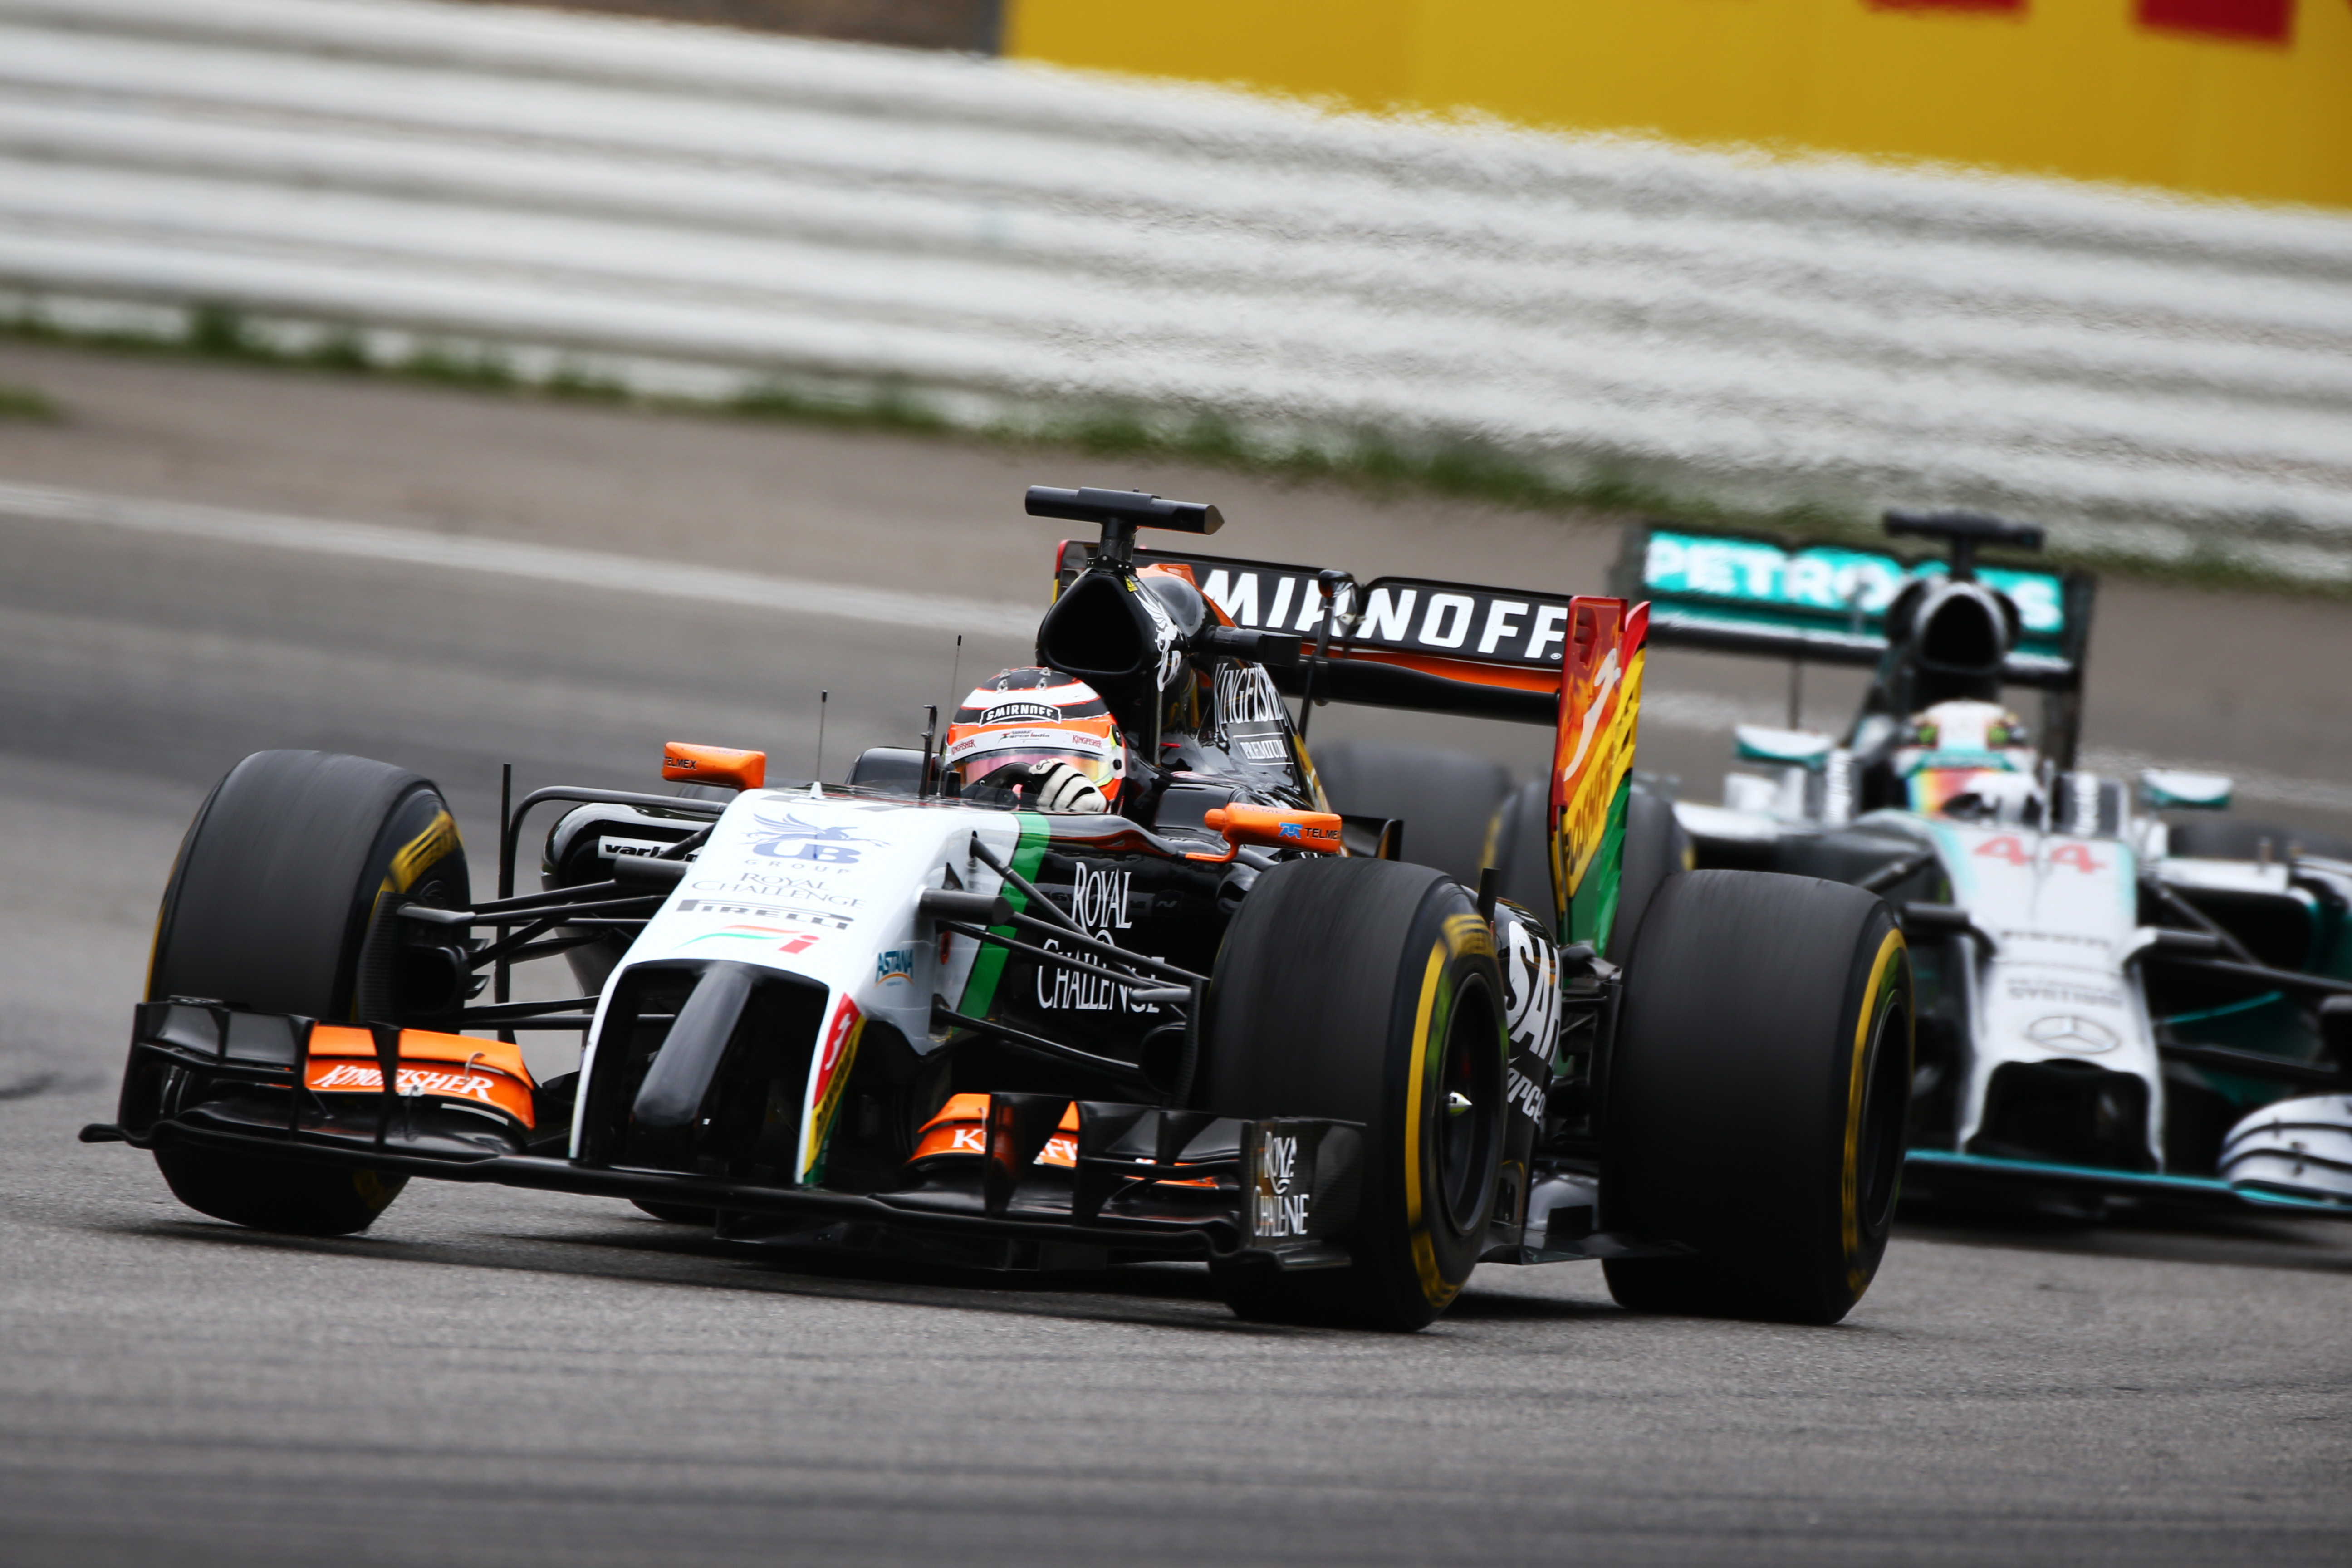 Force India houdt zeven punten over aan thuisrace Hülkenberg